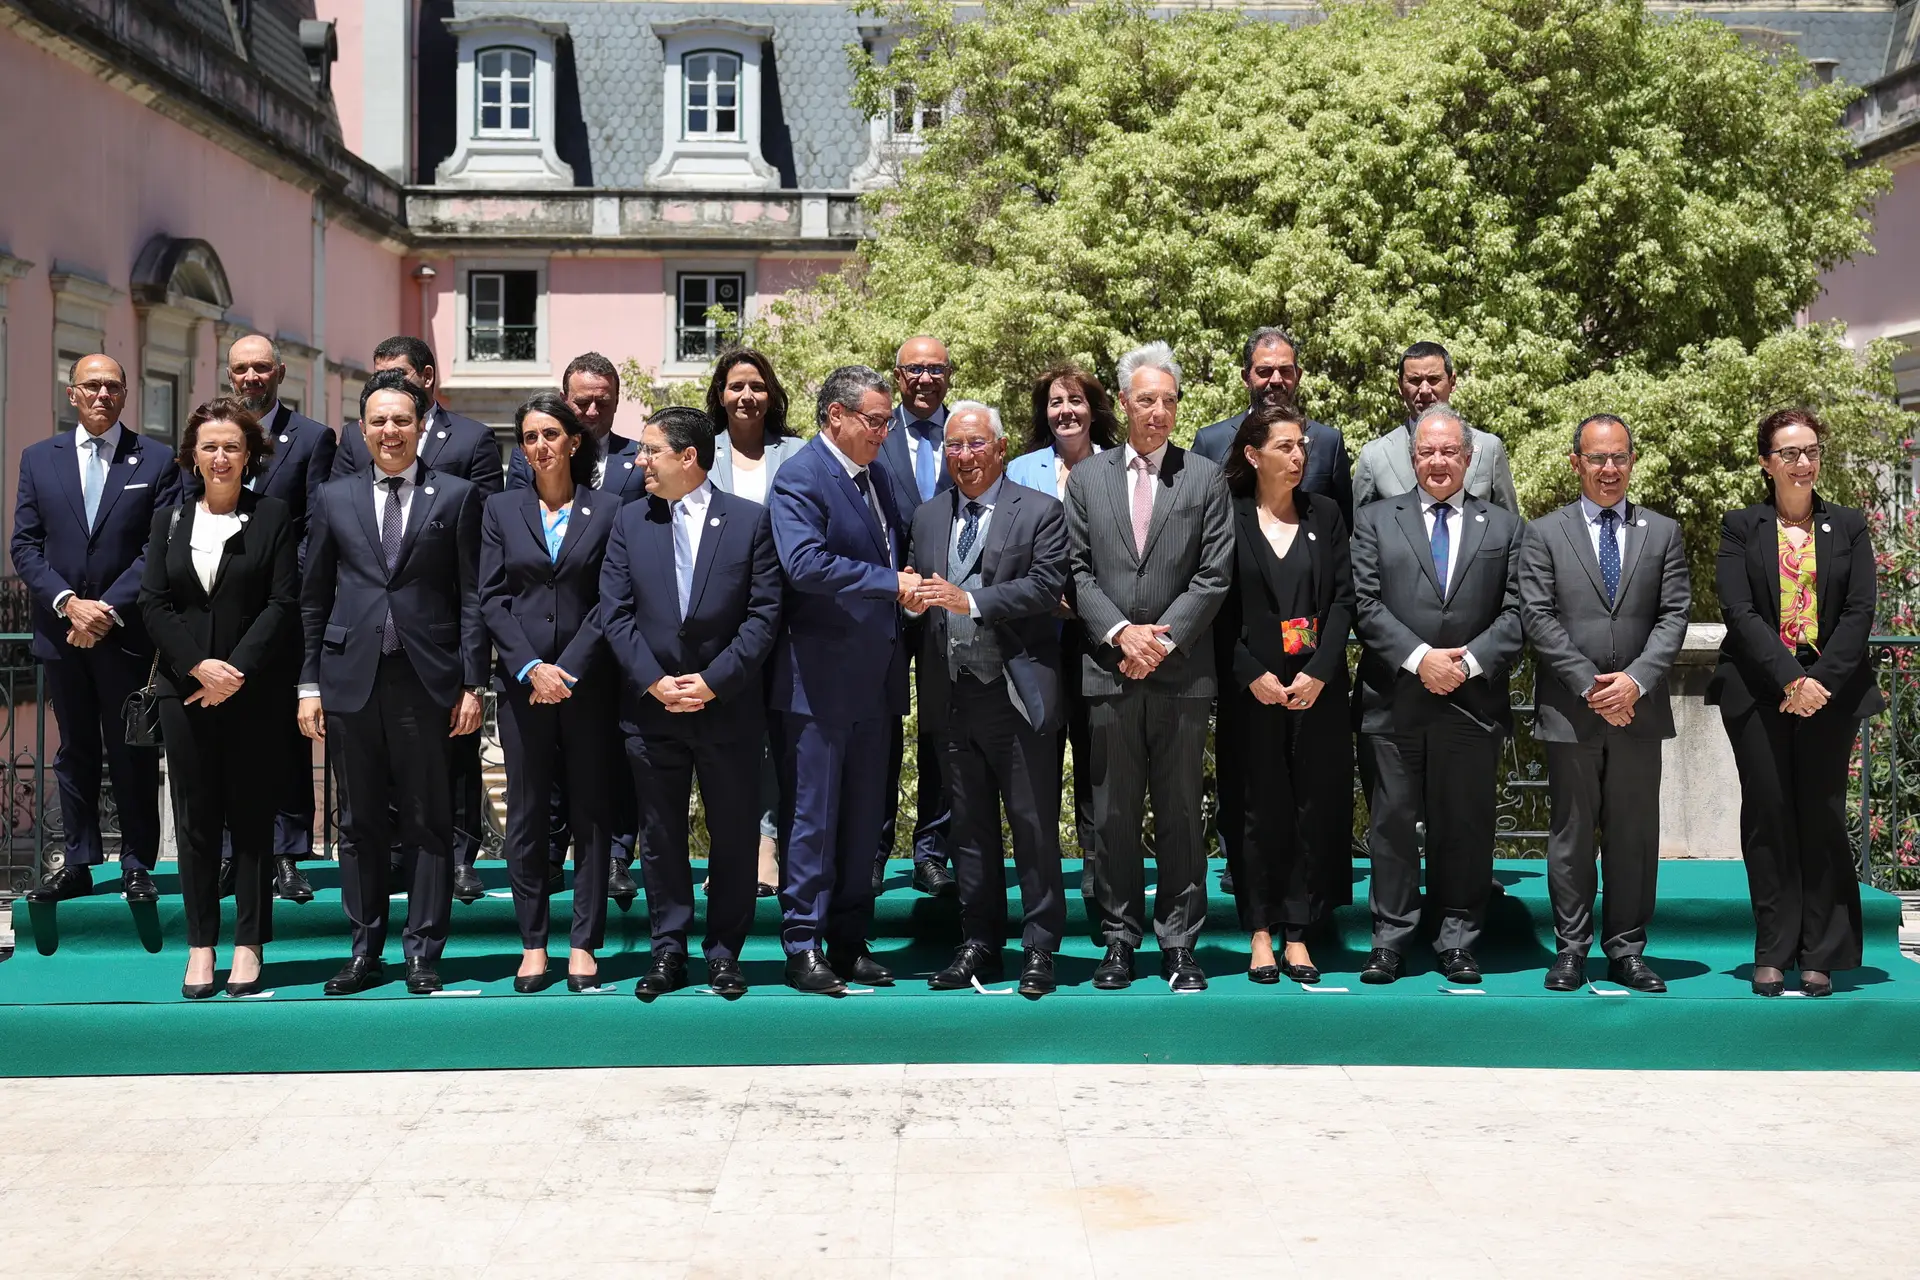 Costa salienta 250 anos de paz Portugal/Marrocos como fator de confiança bilateral